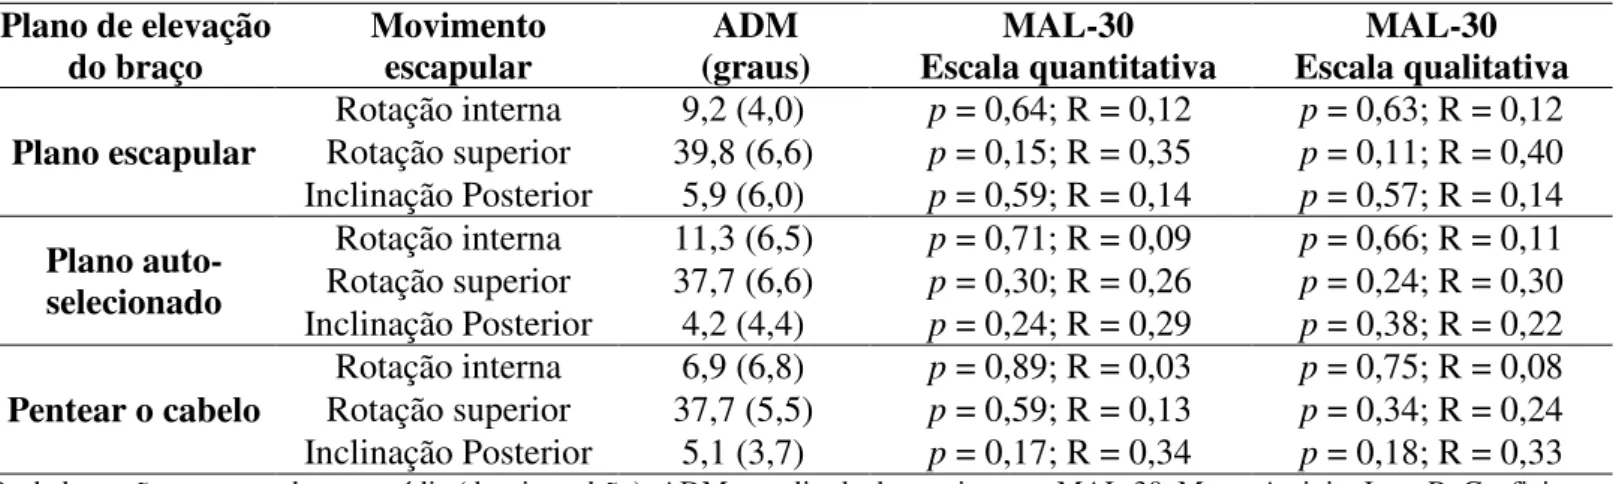 Tabela 3. Correlação da amplitude de movimento (ADM) escapular e as escalas quantitativa e qualitativa do  questionário MAL-30